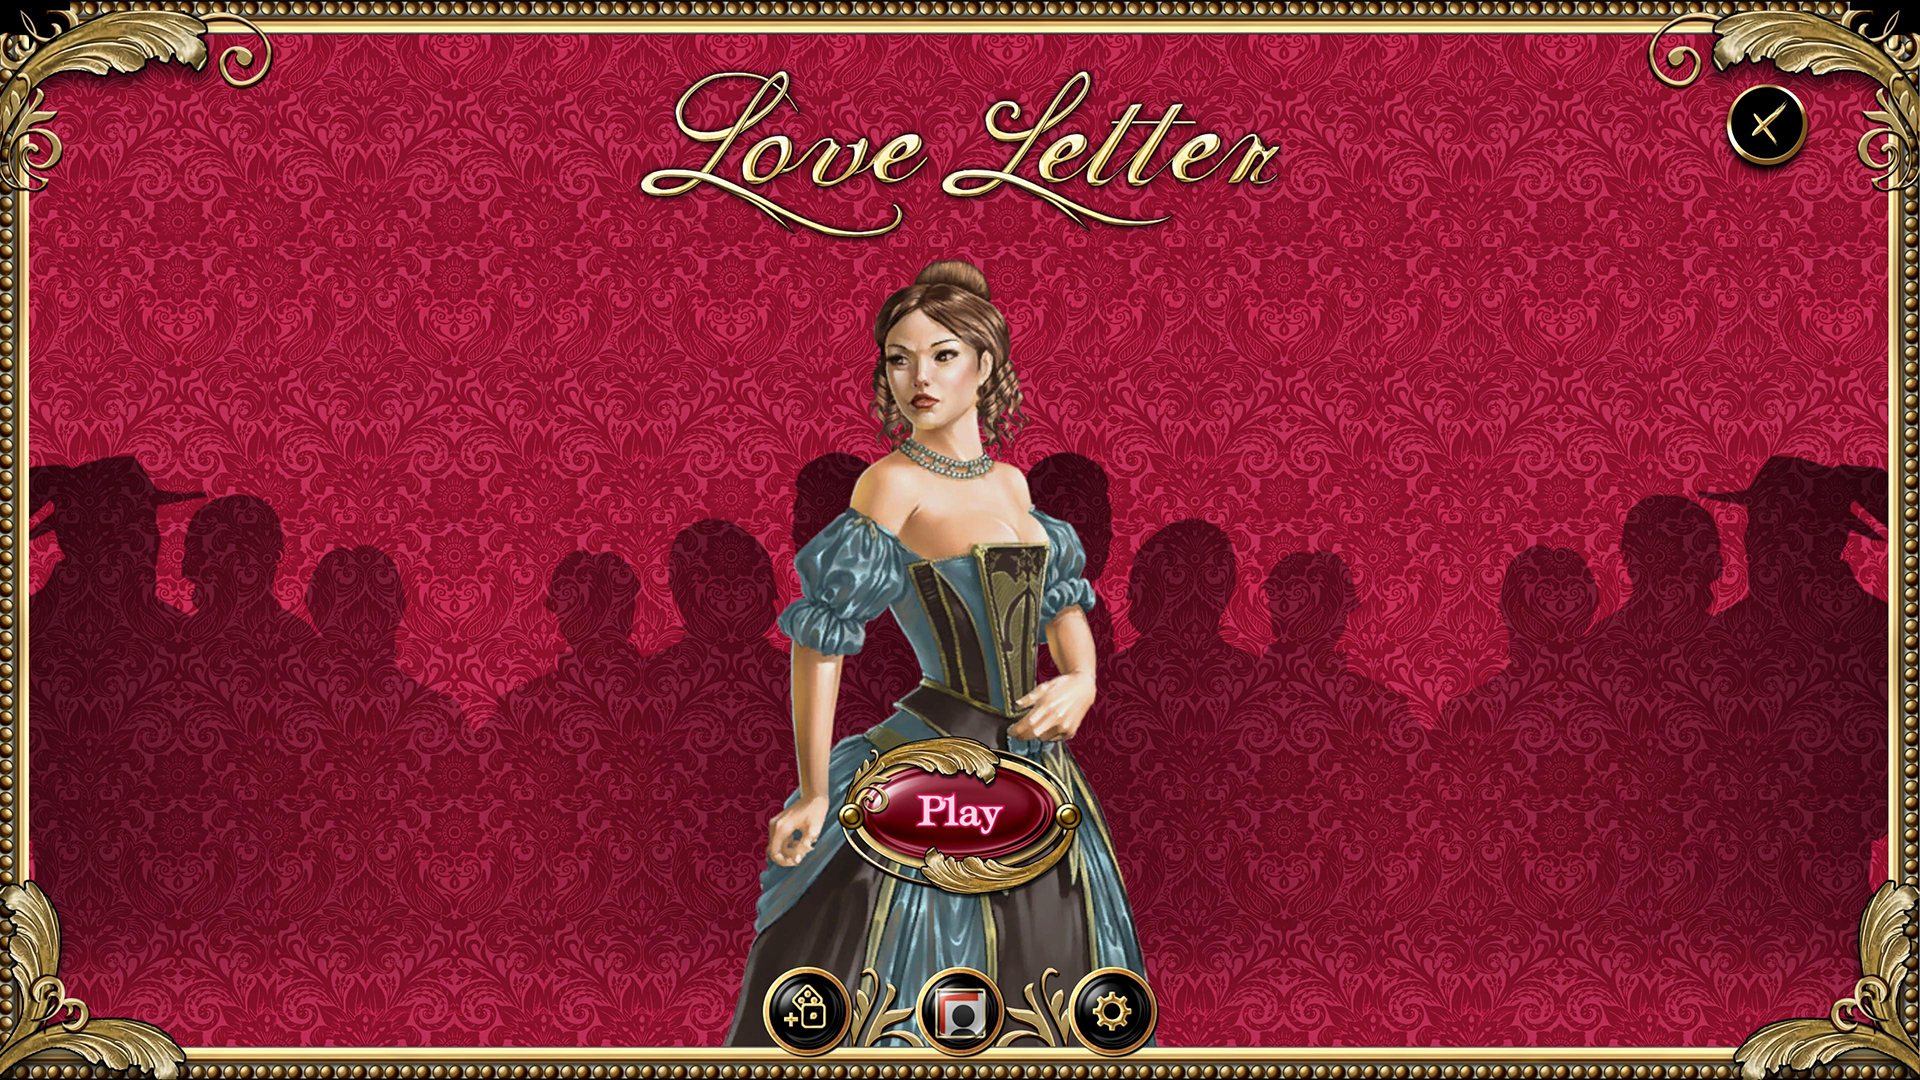 [$ 0.26] Love Letter Steam CD Key